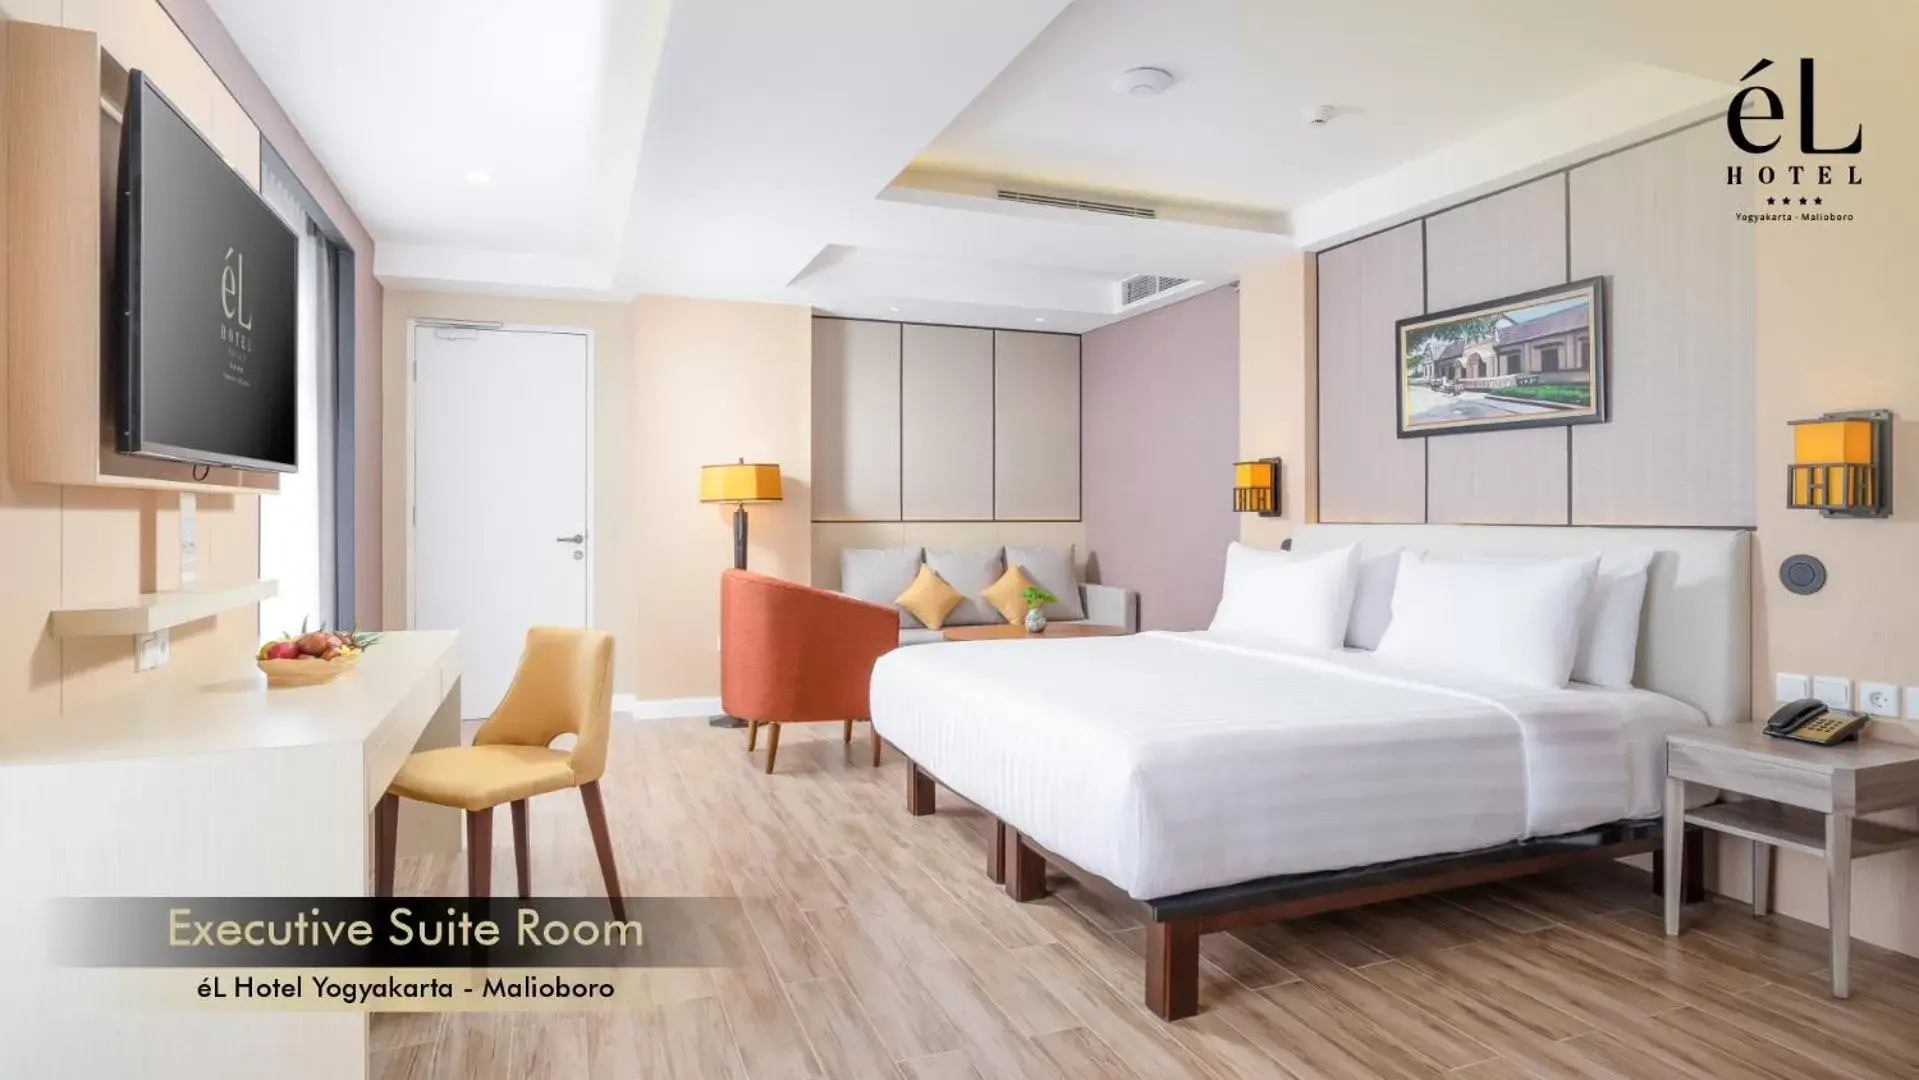 Bedroom in eL Hotel Yogyakarta Malioboro